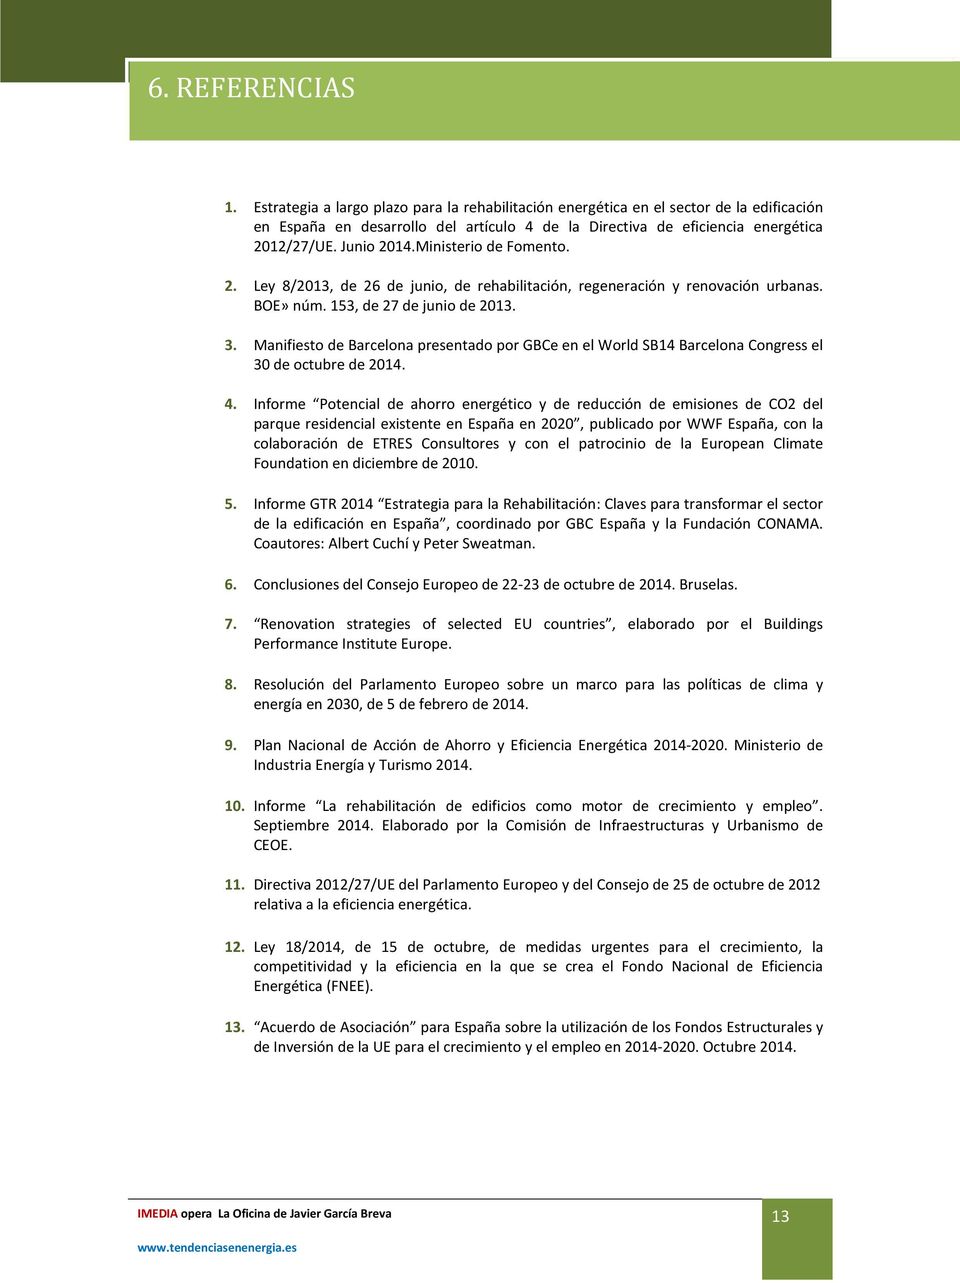 Manifiesto de Barcelona presentado por GBCe en el World SB14 Barcelona Congress el 30 de octubre de 2014. 4.